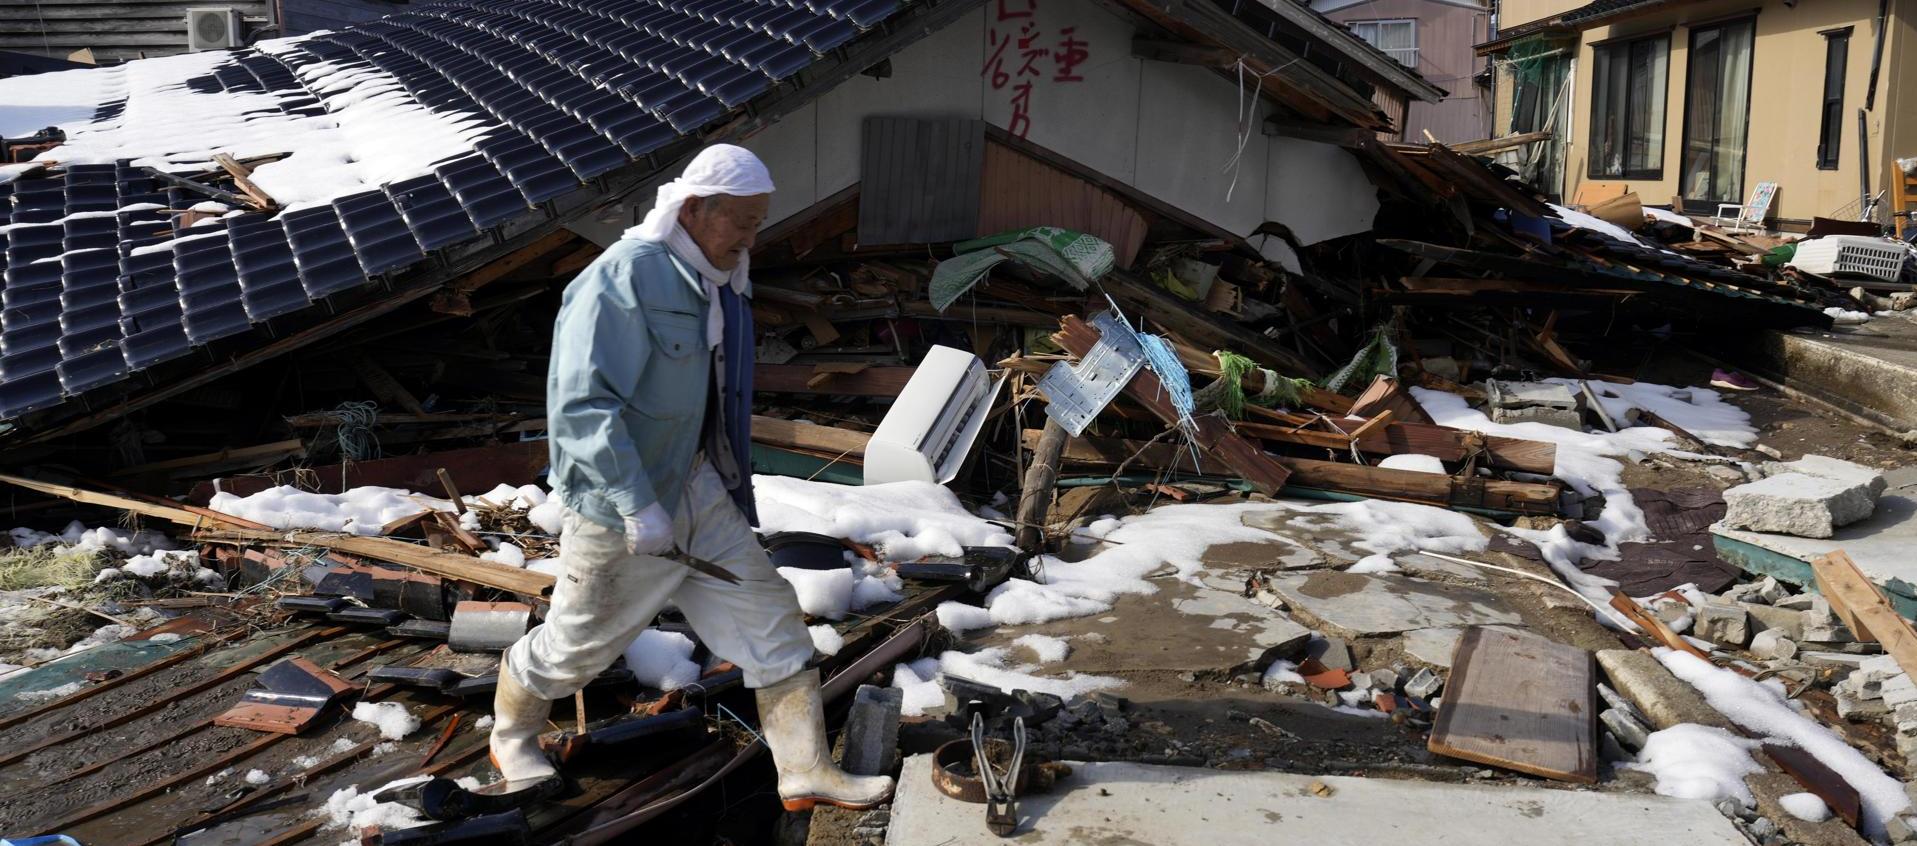 Foto de archivo de un terremoto en Japón el pasado 1 de enero. 